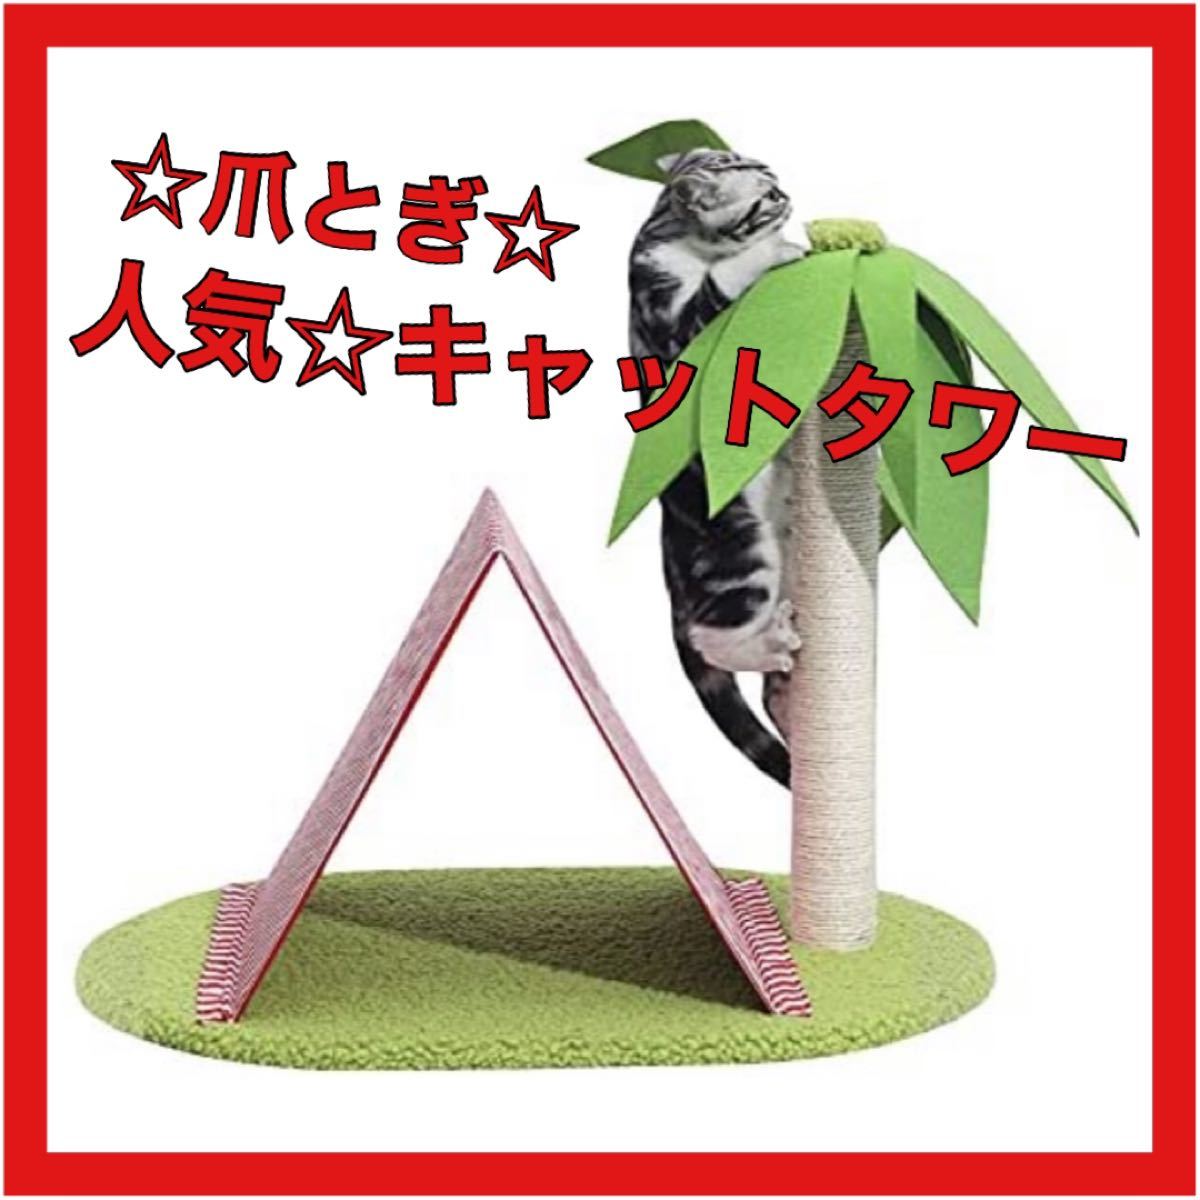 【ヤシの木型キャットタワー】爪研ぎ 猫タワー 組立簡単 ストレス解消